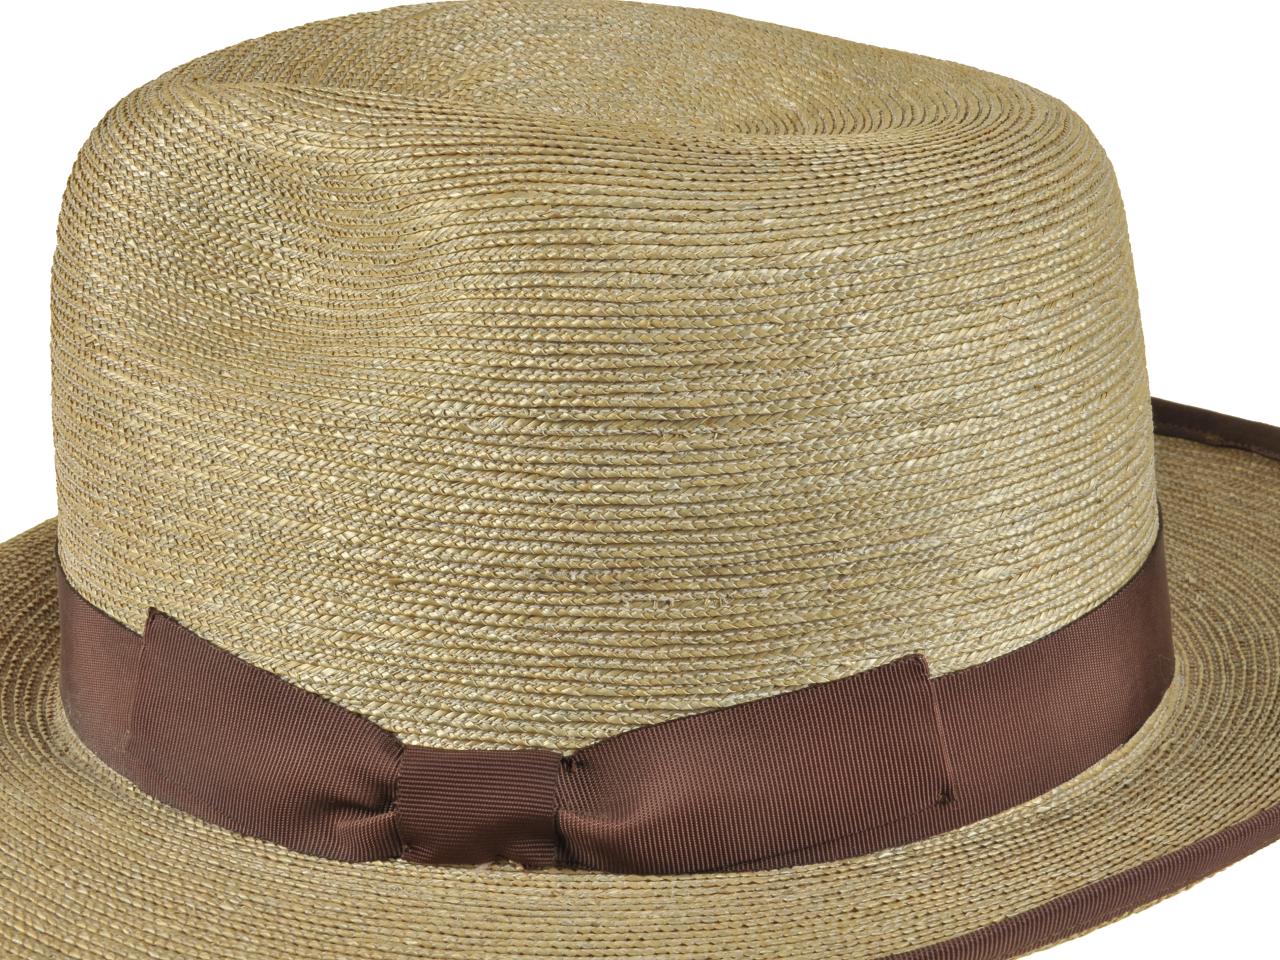 Detalle de sombrero tipo calañé, tejido en paja teatina teñida con tintes naturales